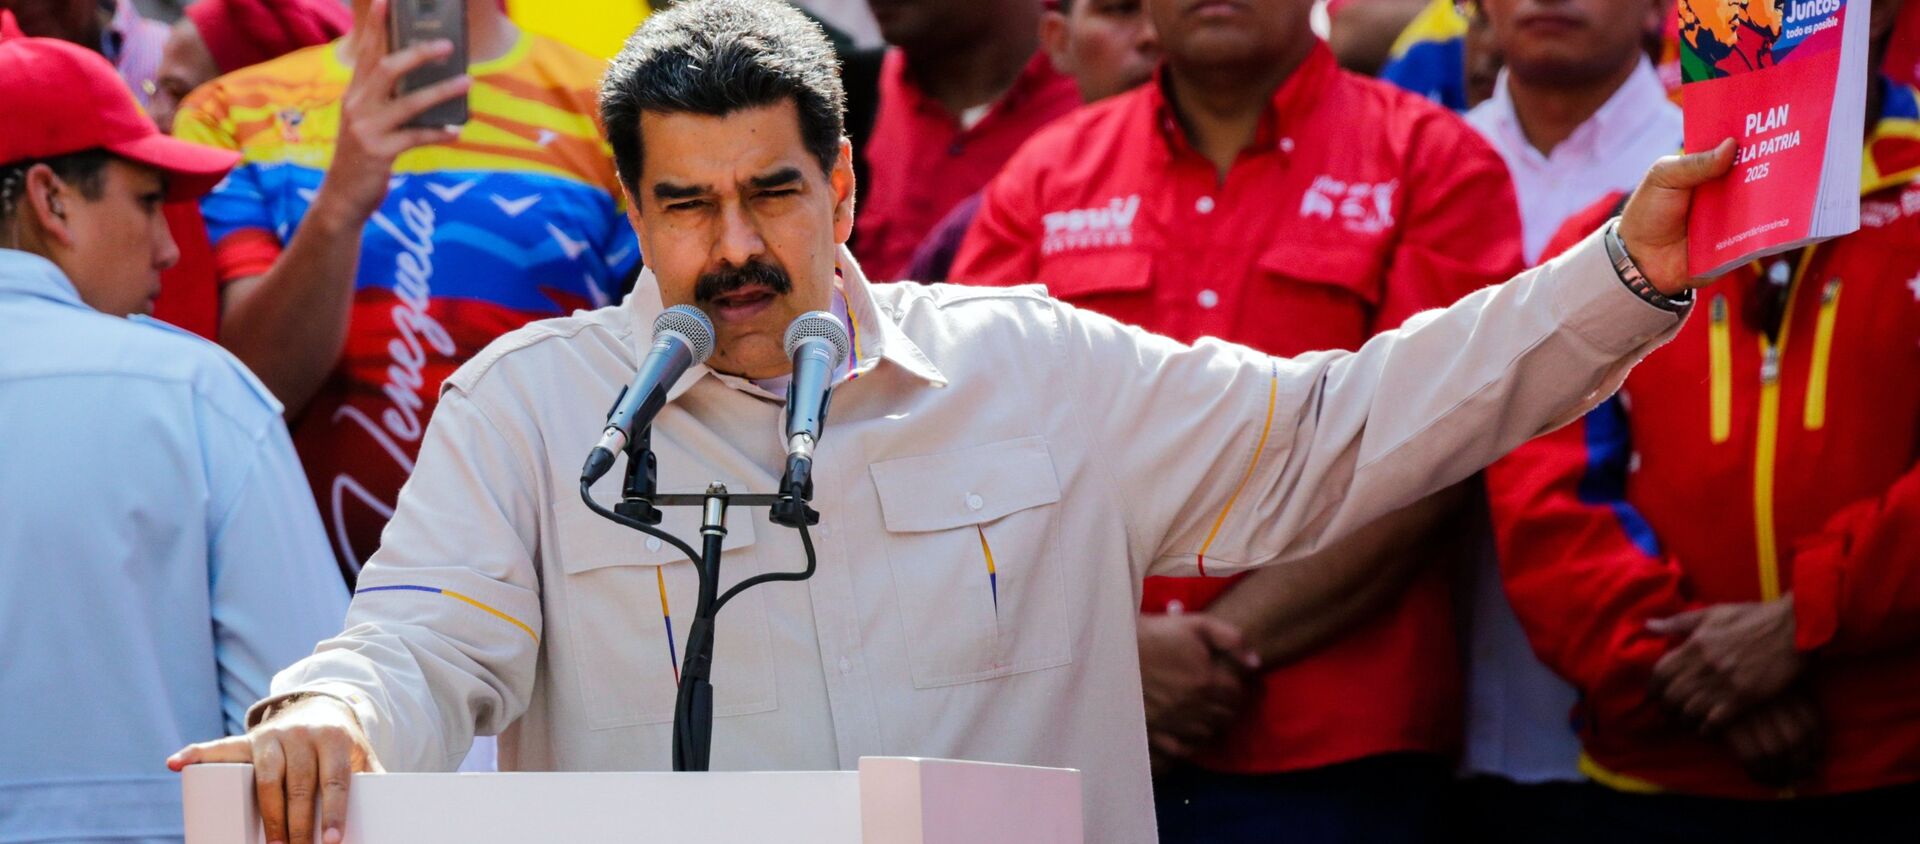 Nicolás Maduro, presidente de Venezuela - Sputnik Mundo, 1920, 29.05.2019